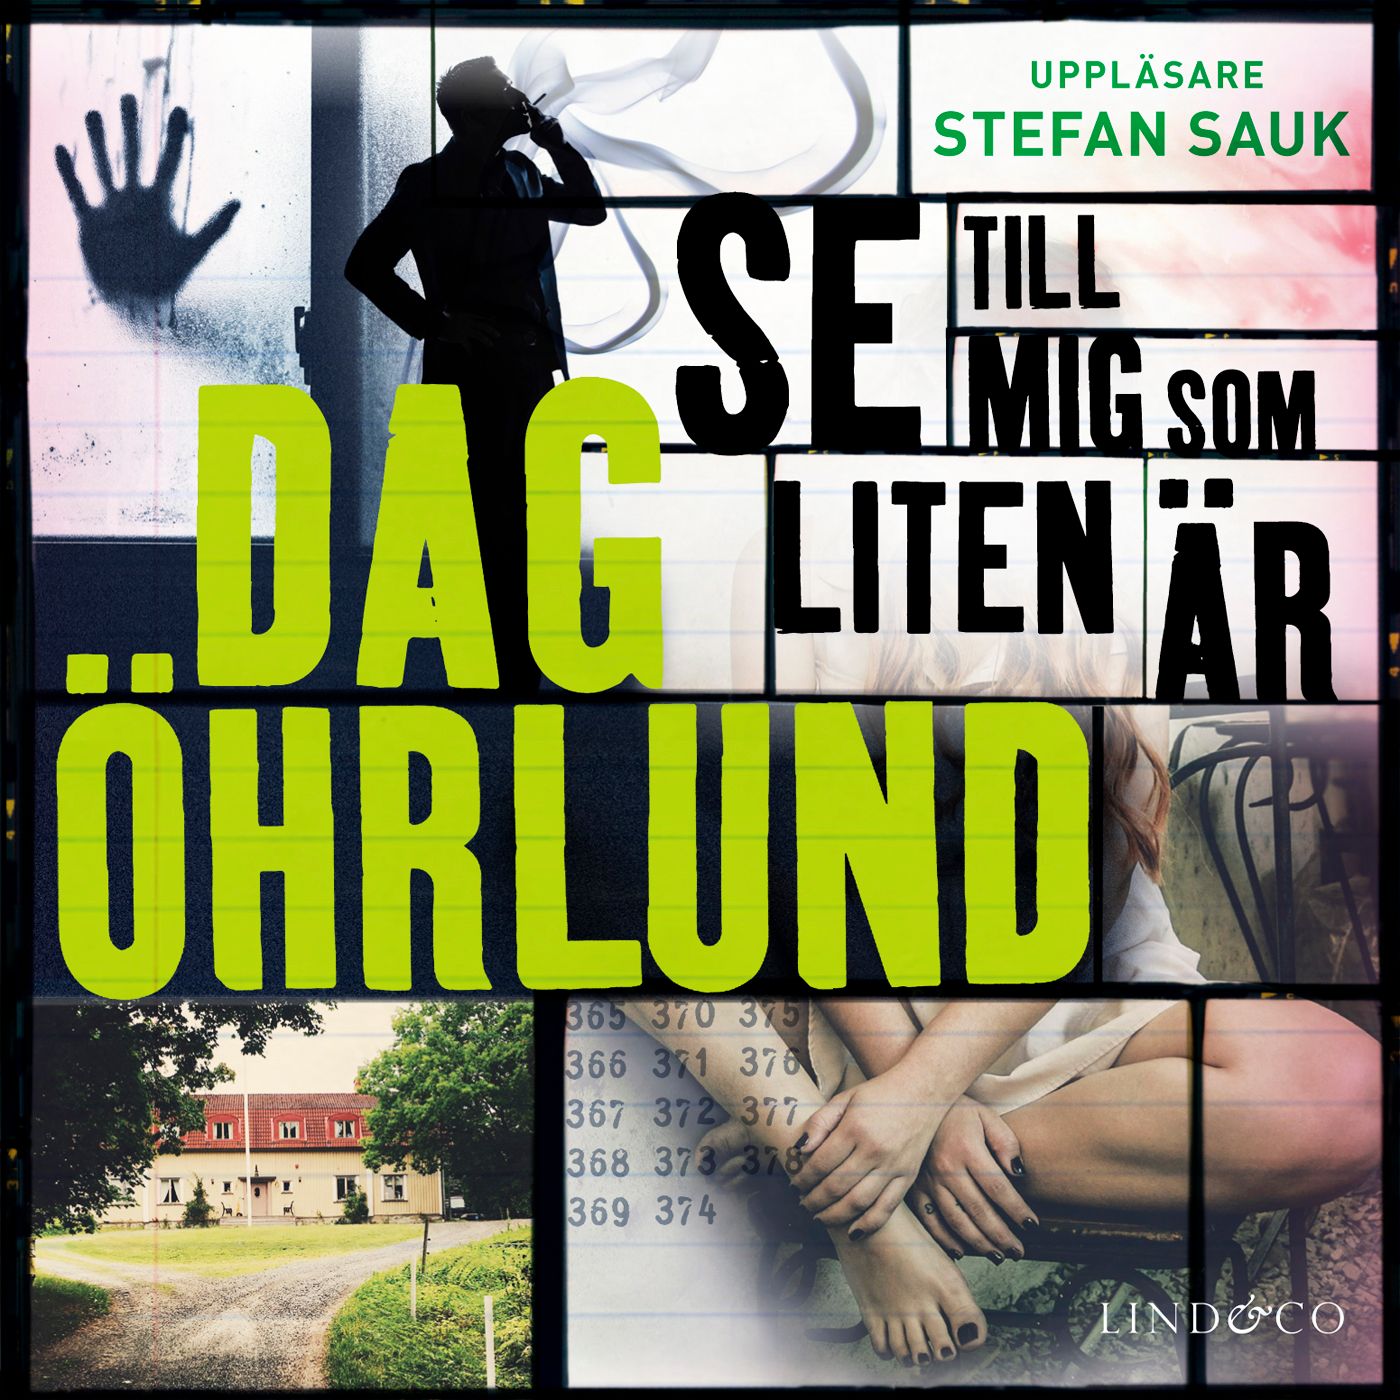 Se till mig som liten är, audiobook by Dag Öhrlund